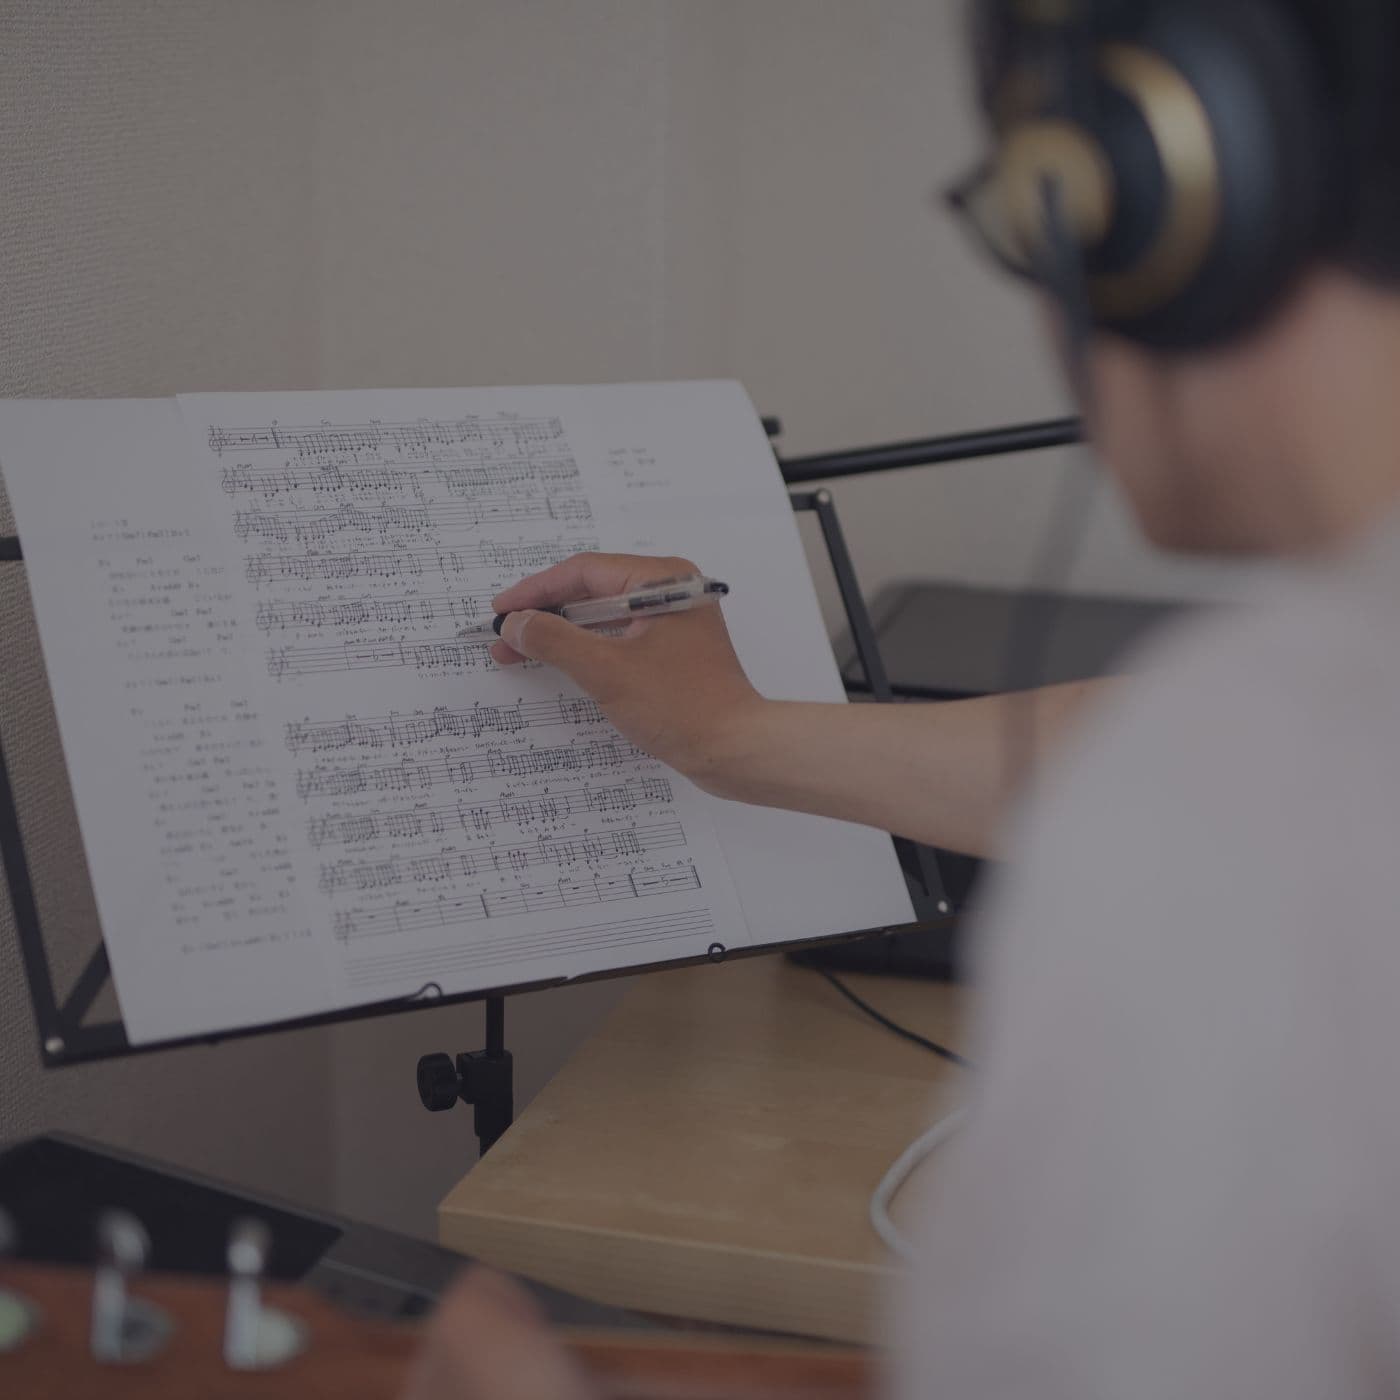 Beat-, Instrumental- & Musikproduktion - Komponist erstellt neue Musikstücke mit Bleistift und Papier